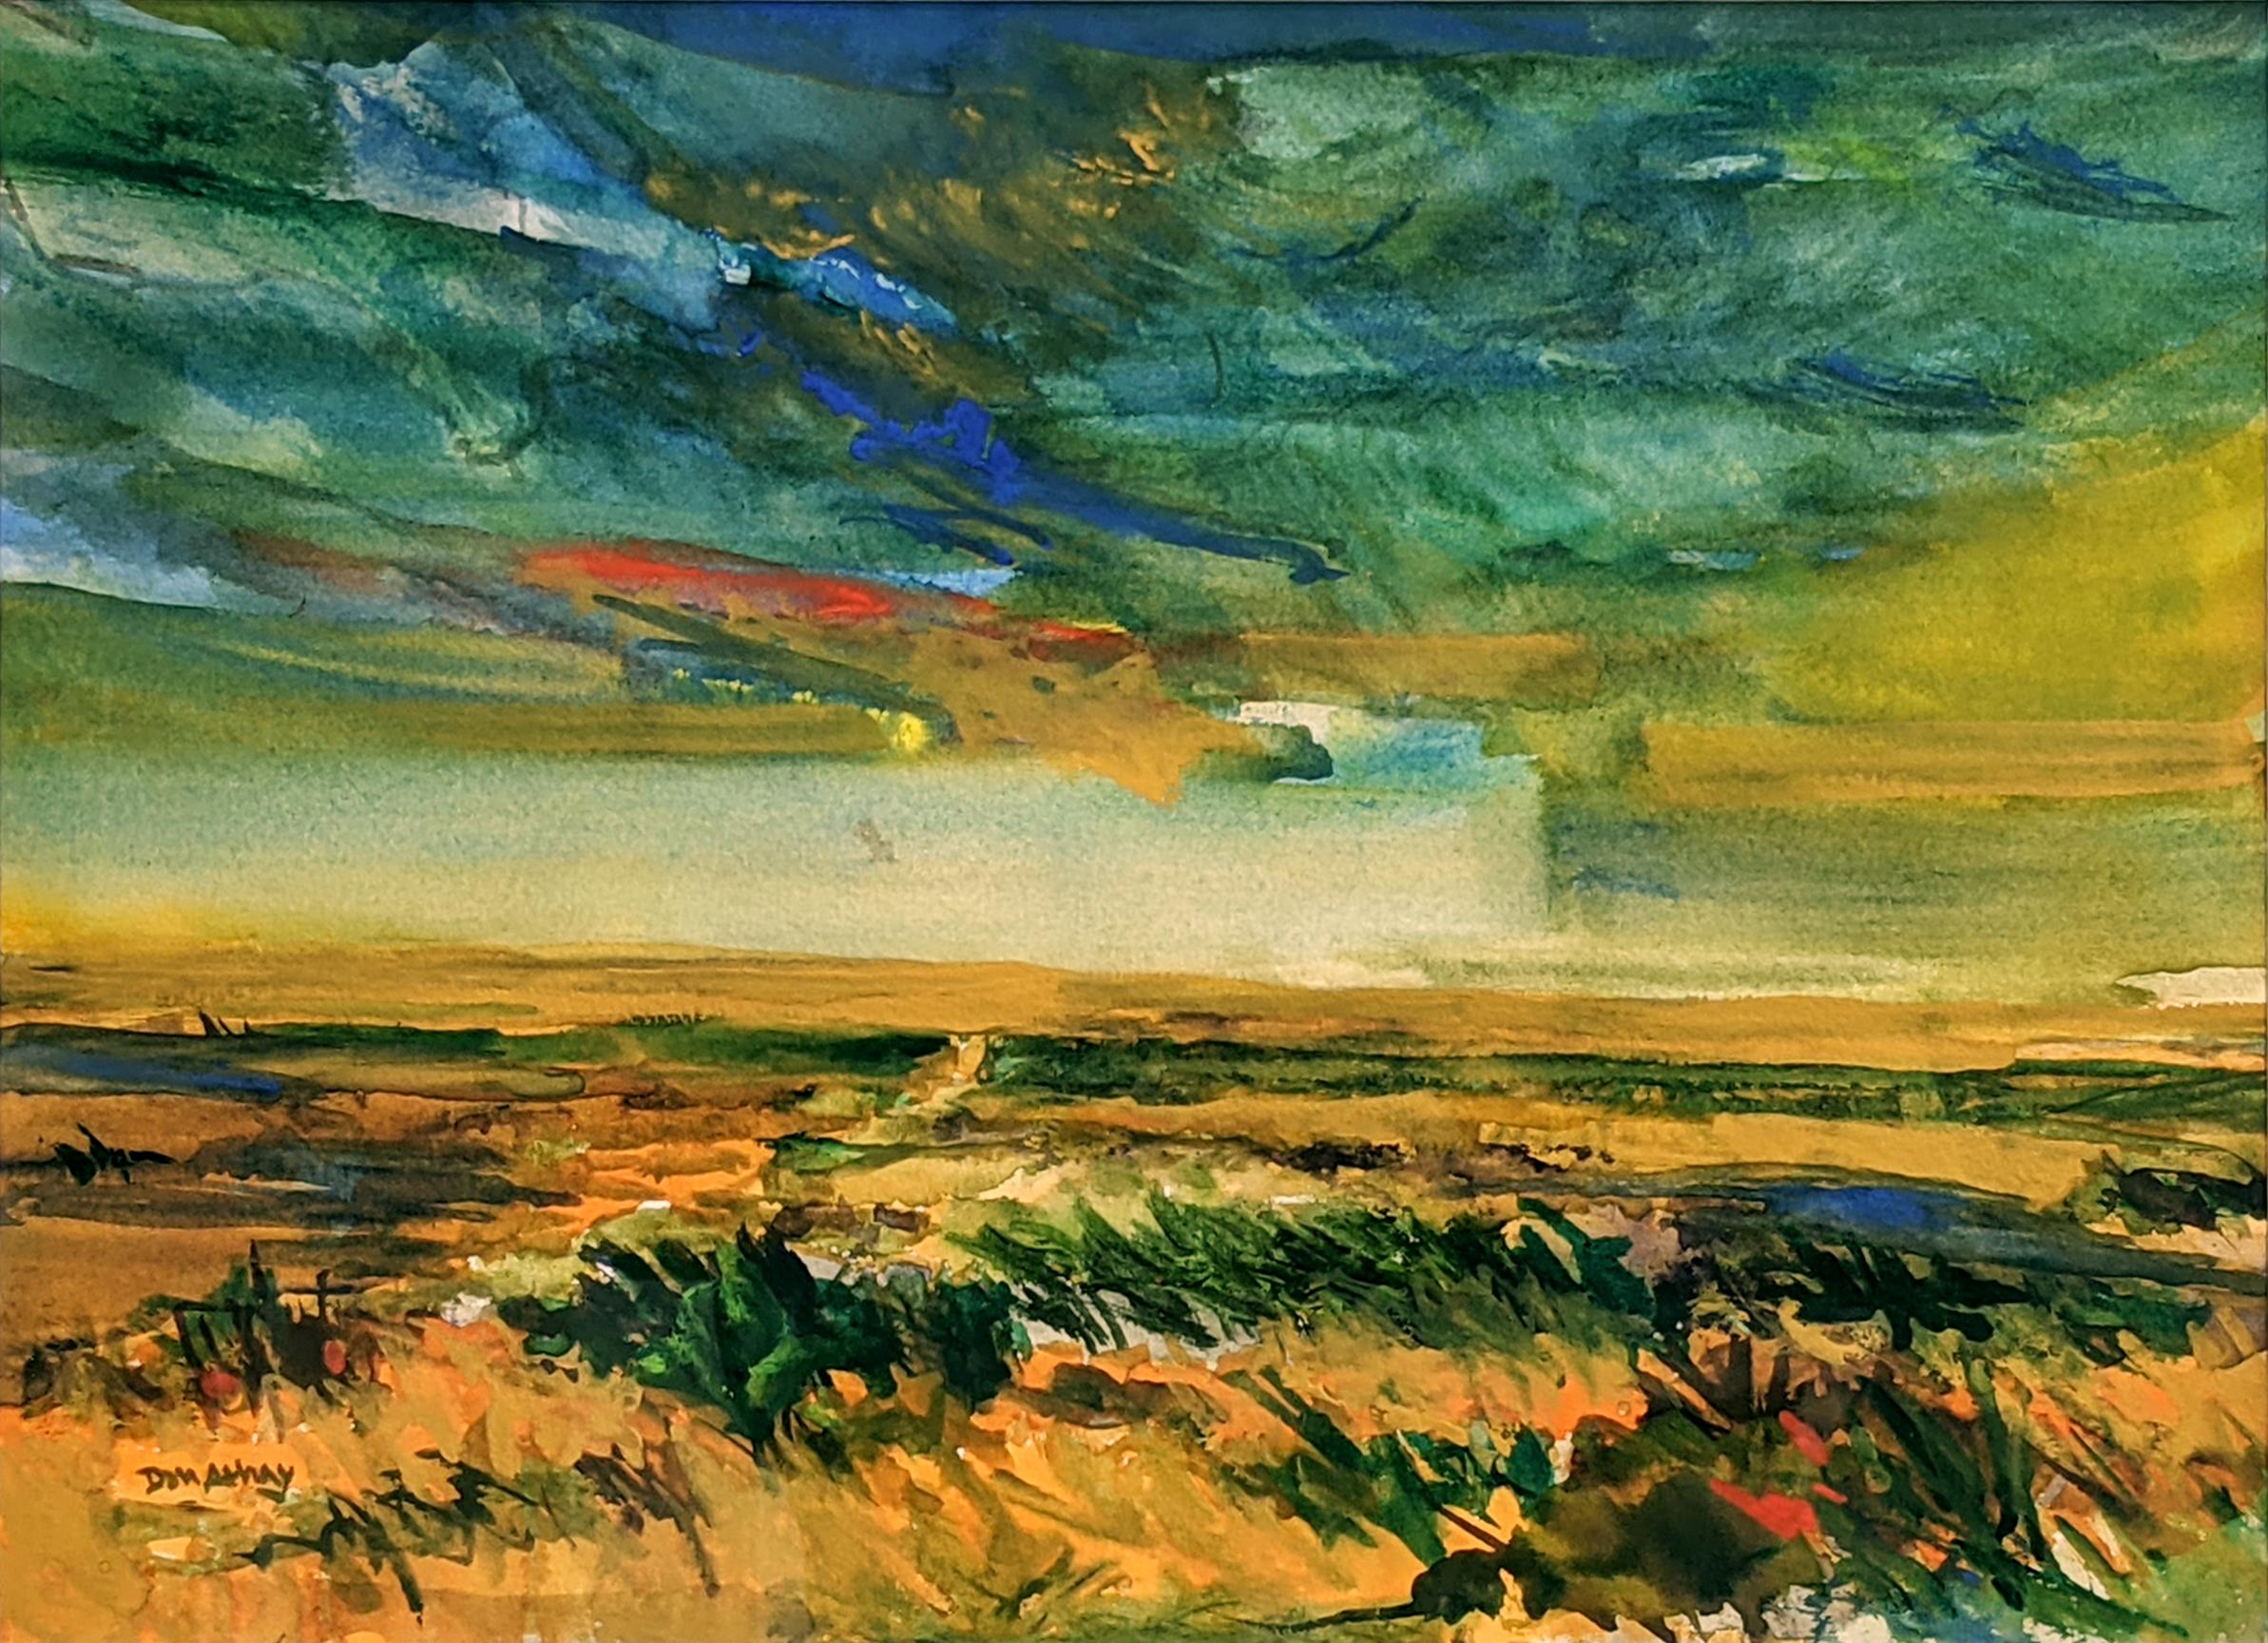 Don Athay Landscape Painting – Erinnerungsstücke